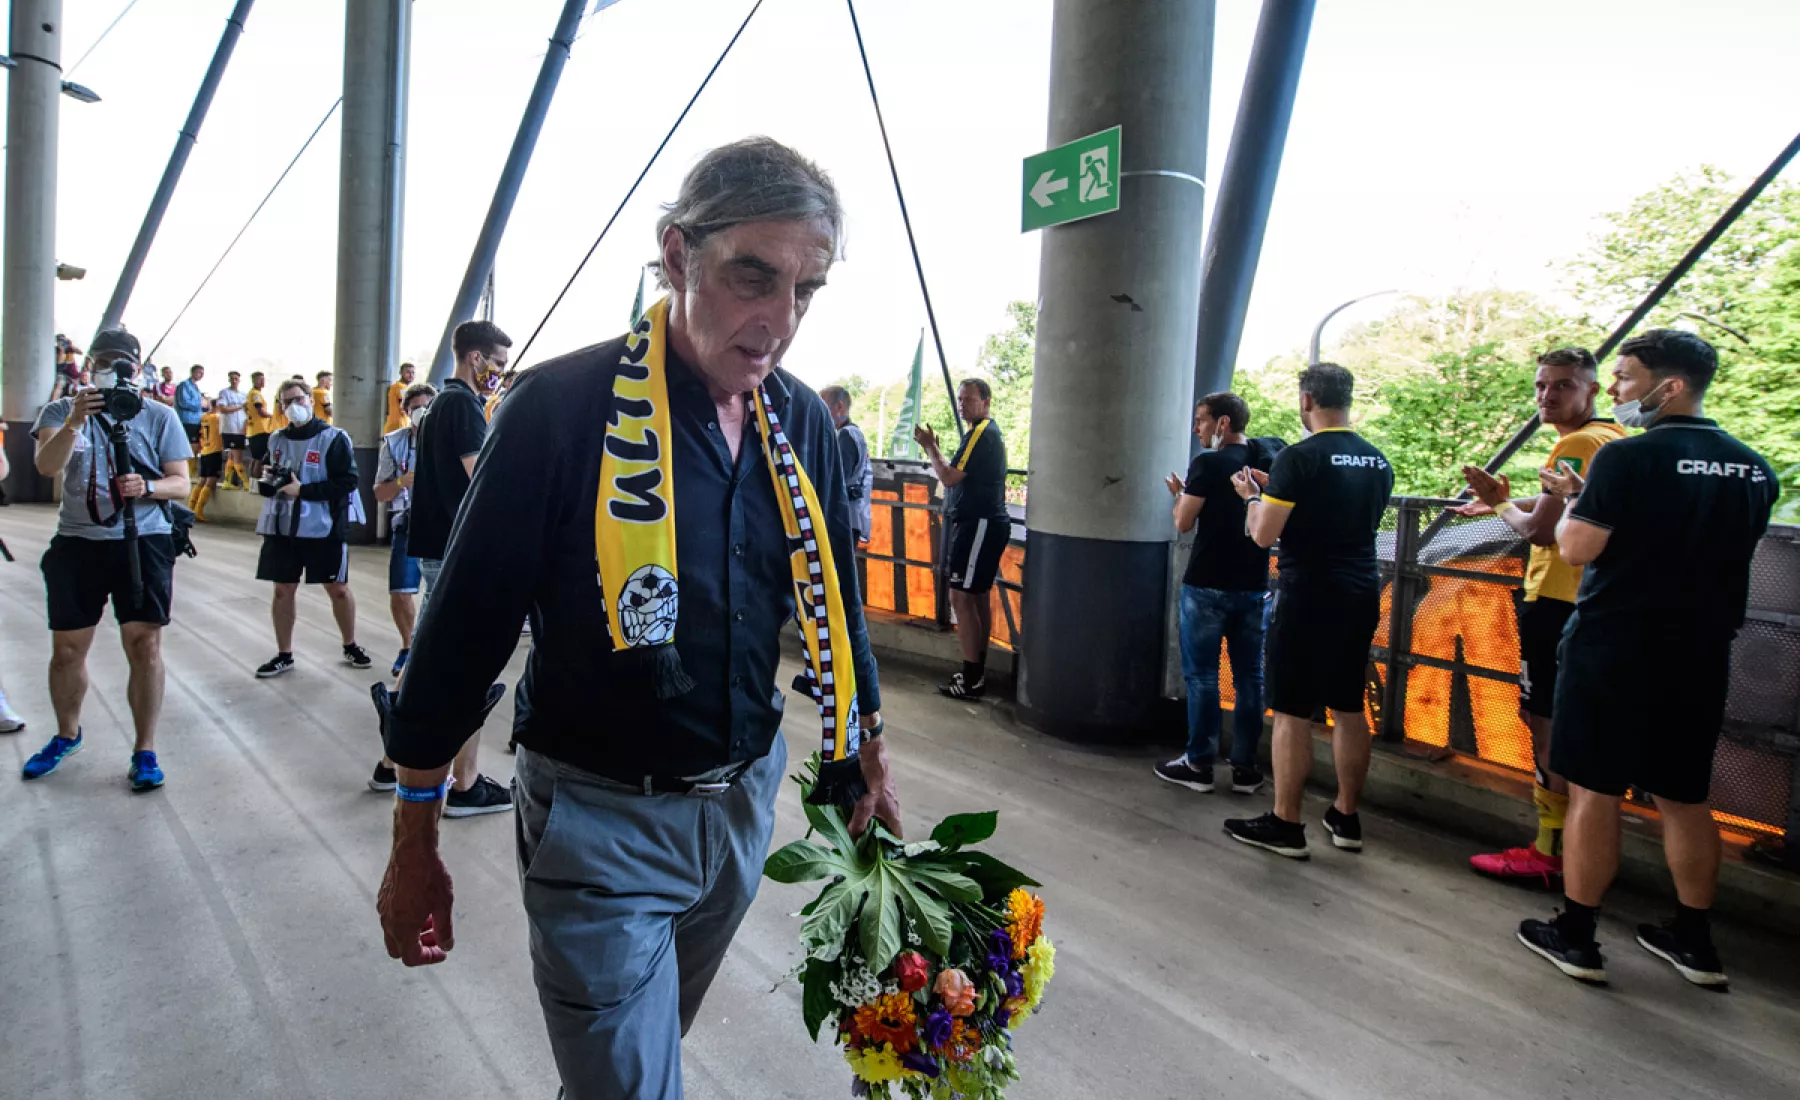 Dynamos scheidender Sportdirektor Ralf Minge wird nach dem Spiel von den Fans, die vor dem Stadion stehen, verabschiedet